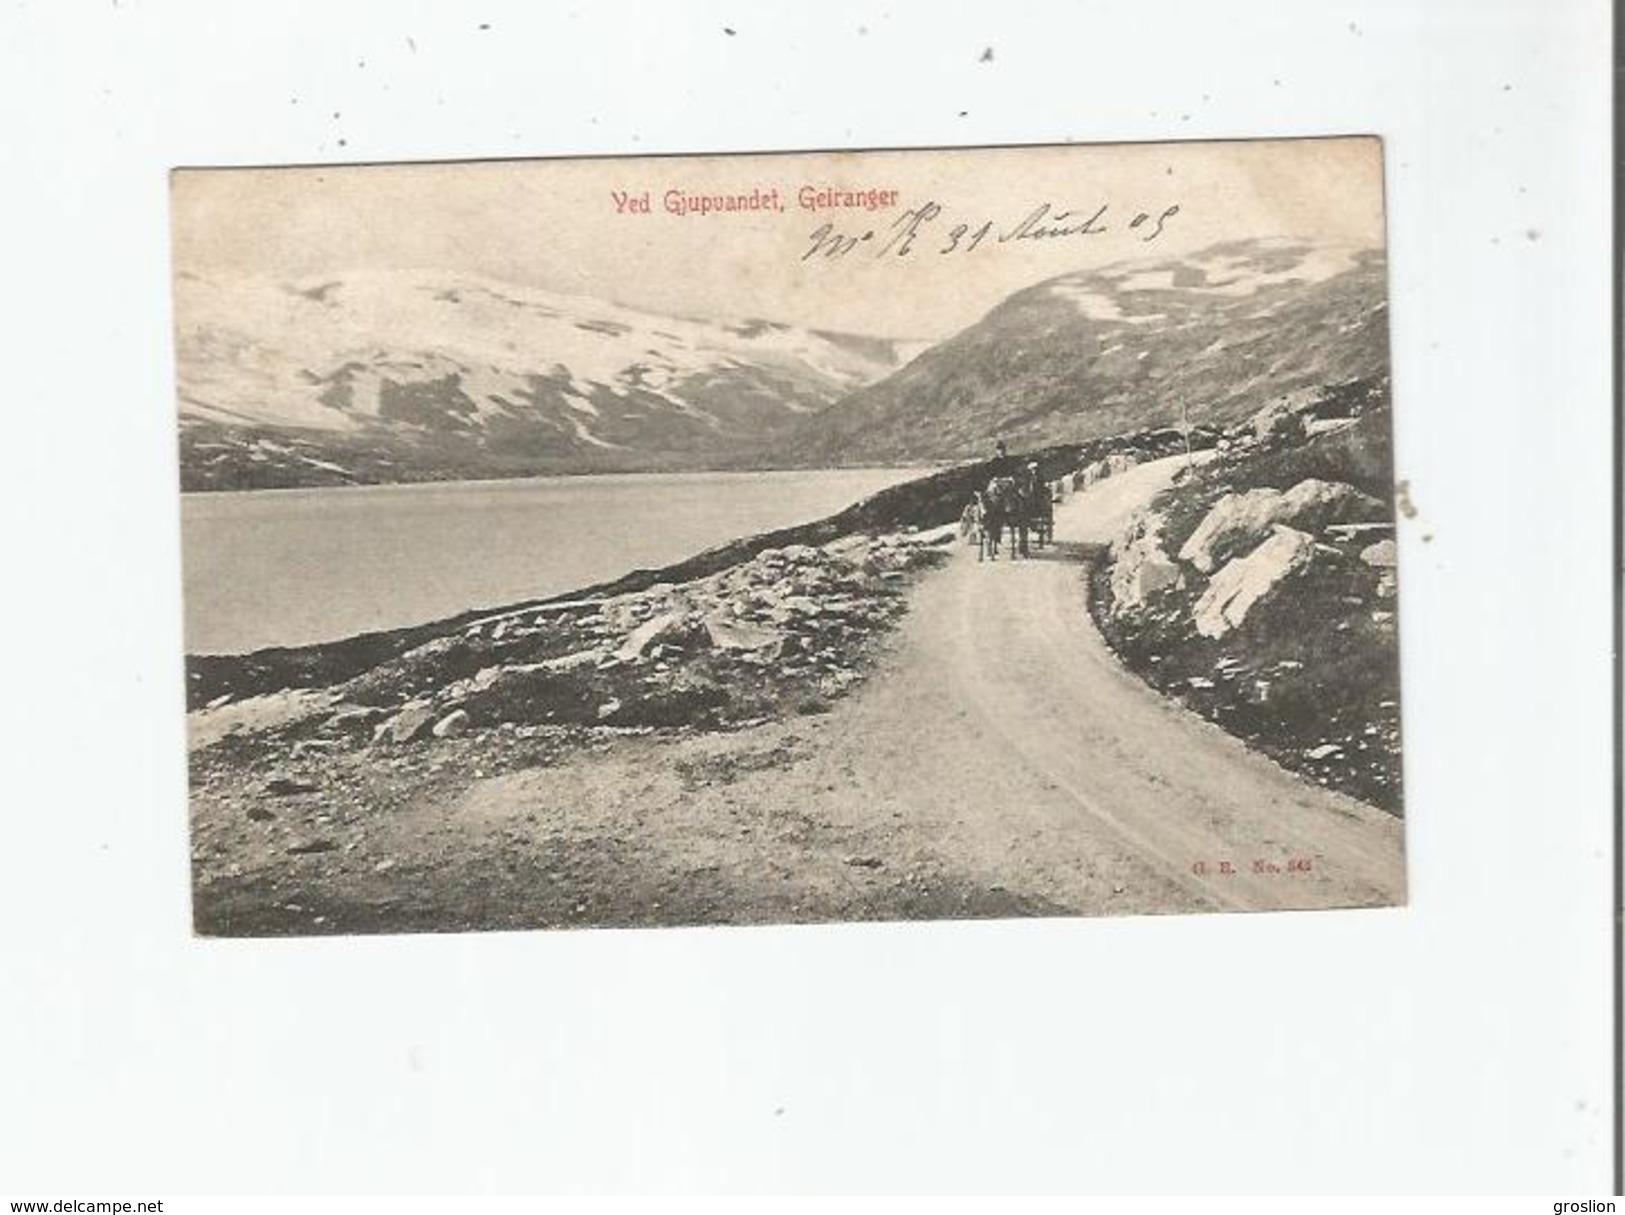 GEIRANGER 847  VED GJUPUANDET 1905 - Noruega